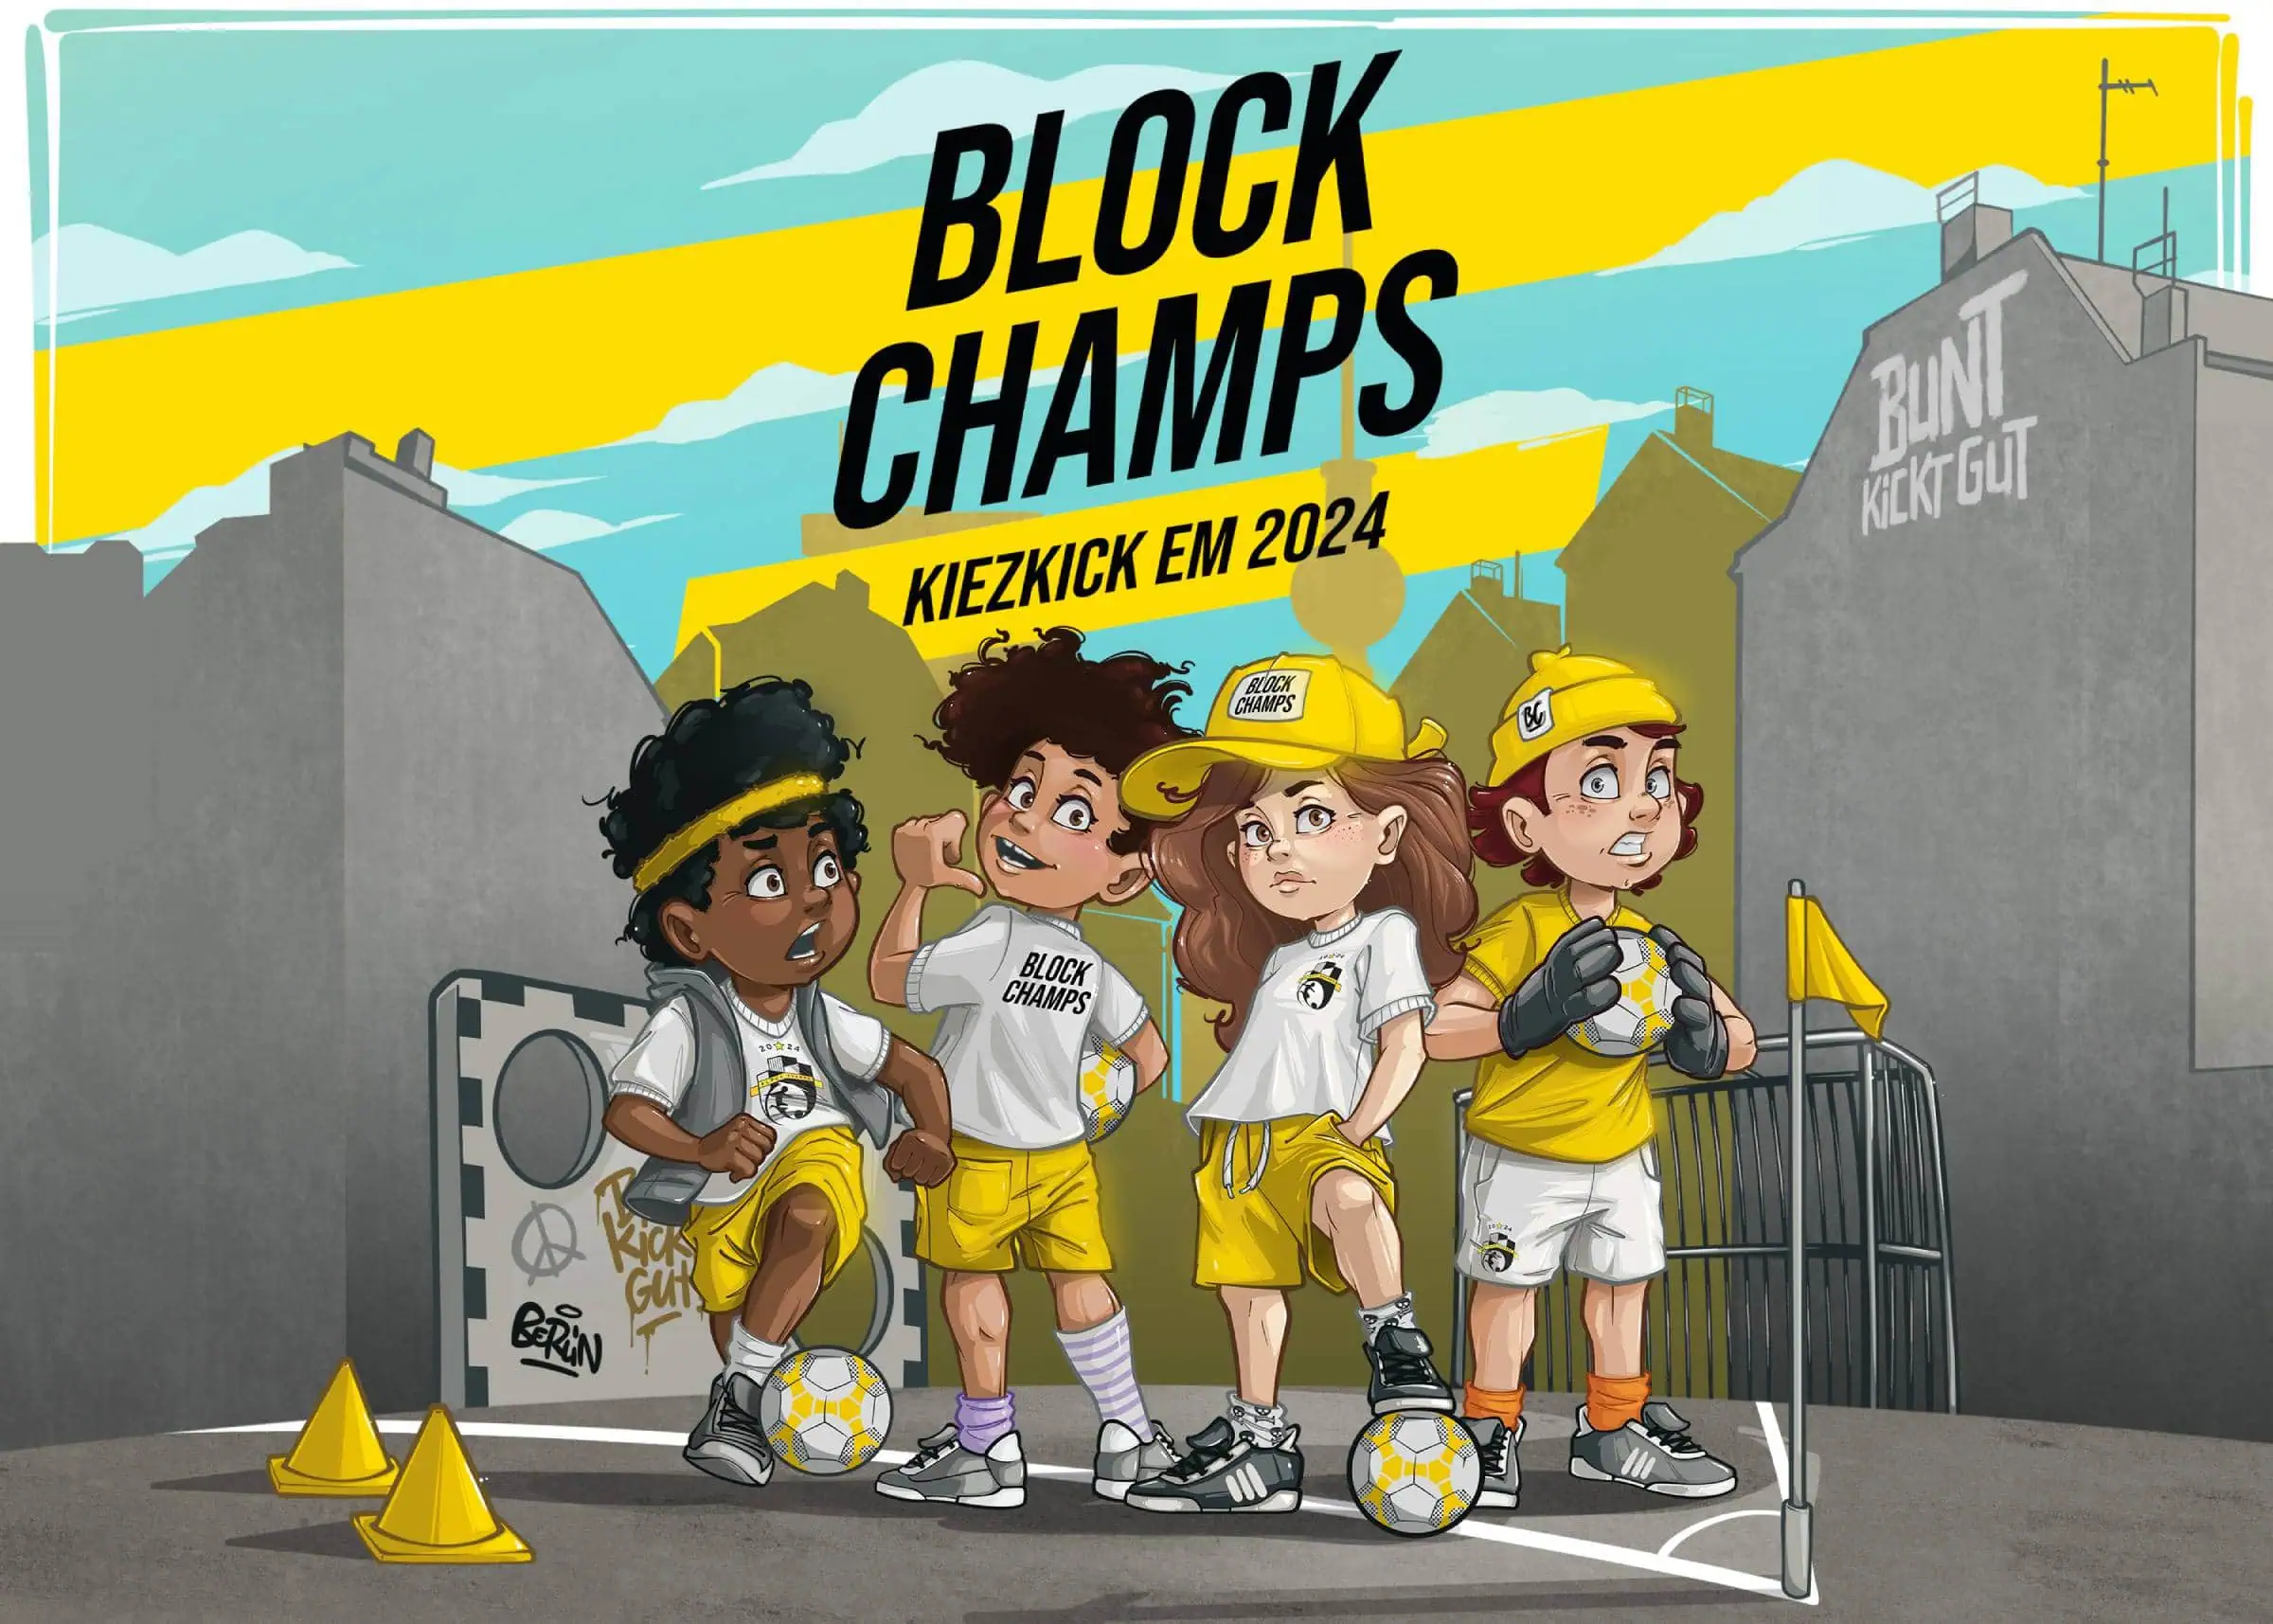 Block Champs, Kiez Kick Em 2024 Von Buntkicktgut // Himbeer